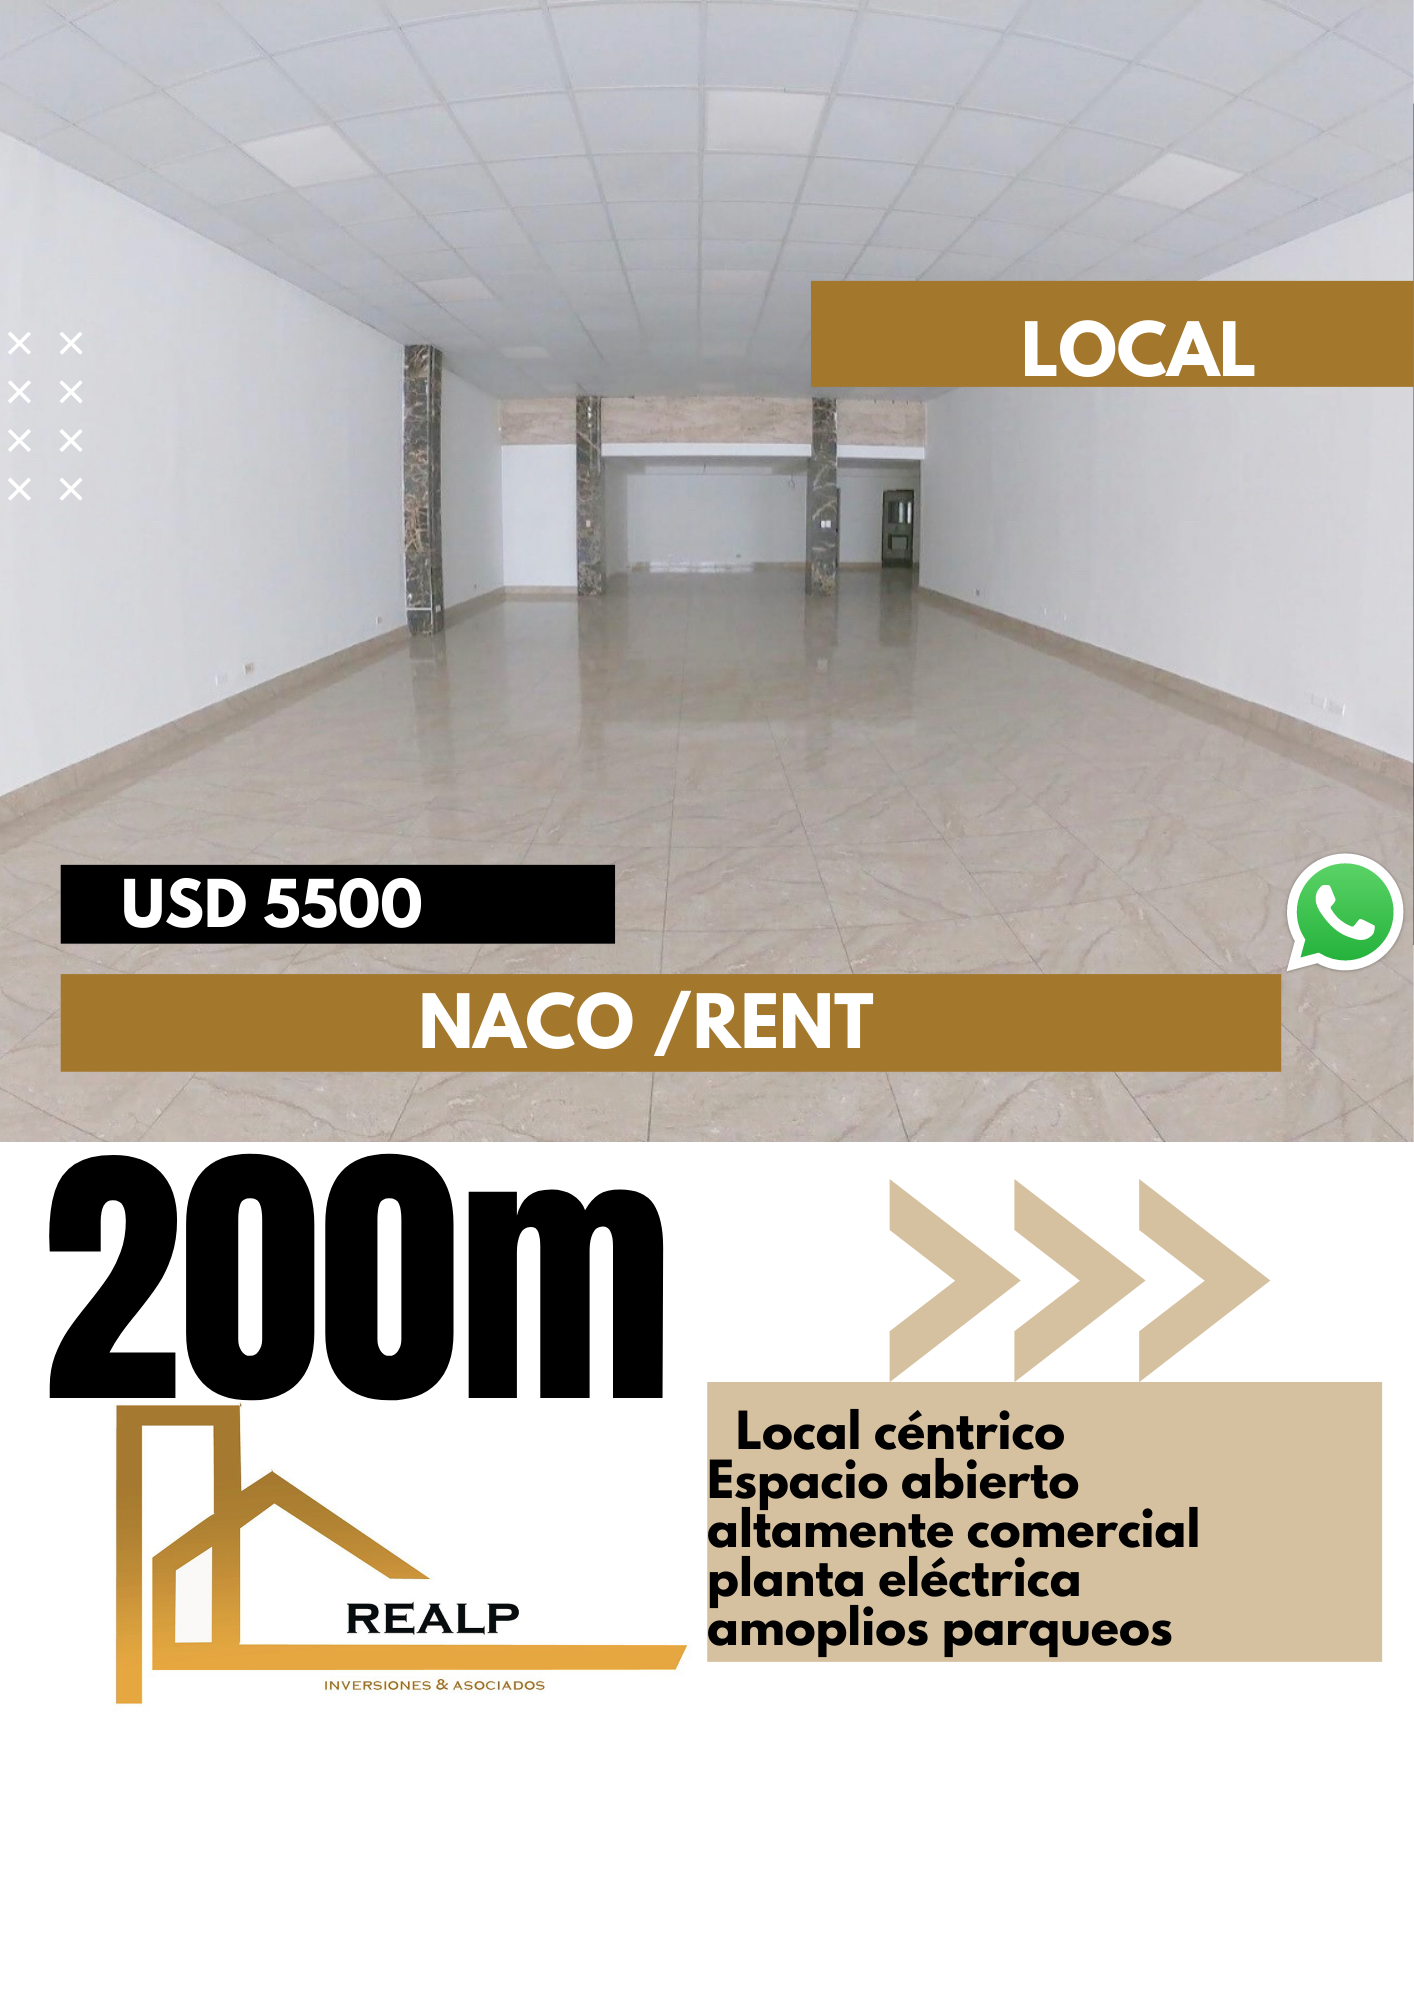 oficinas y locales comerciales - Local espacio abierto en Naco